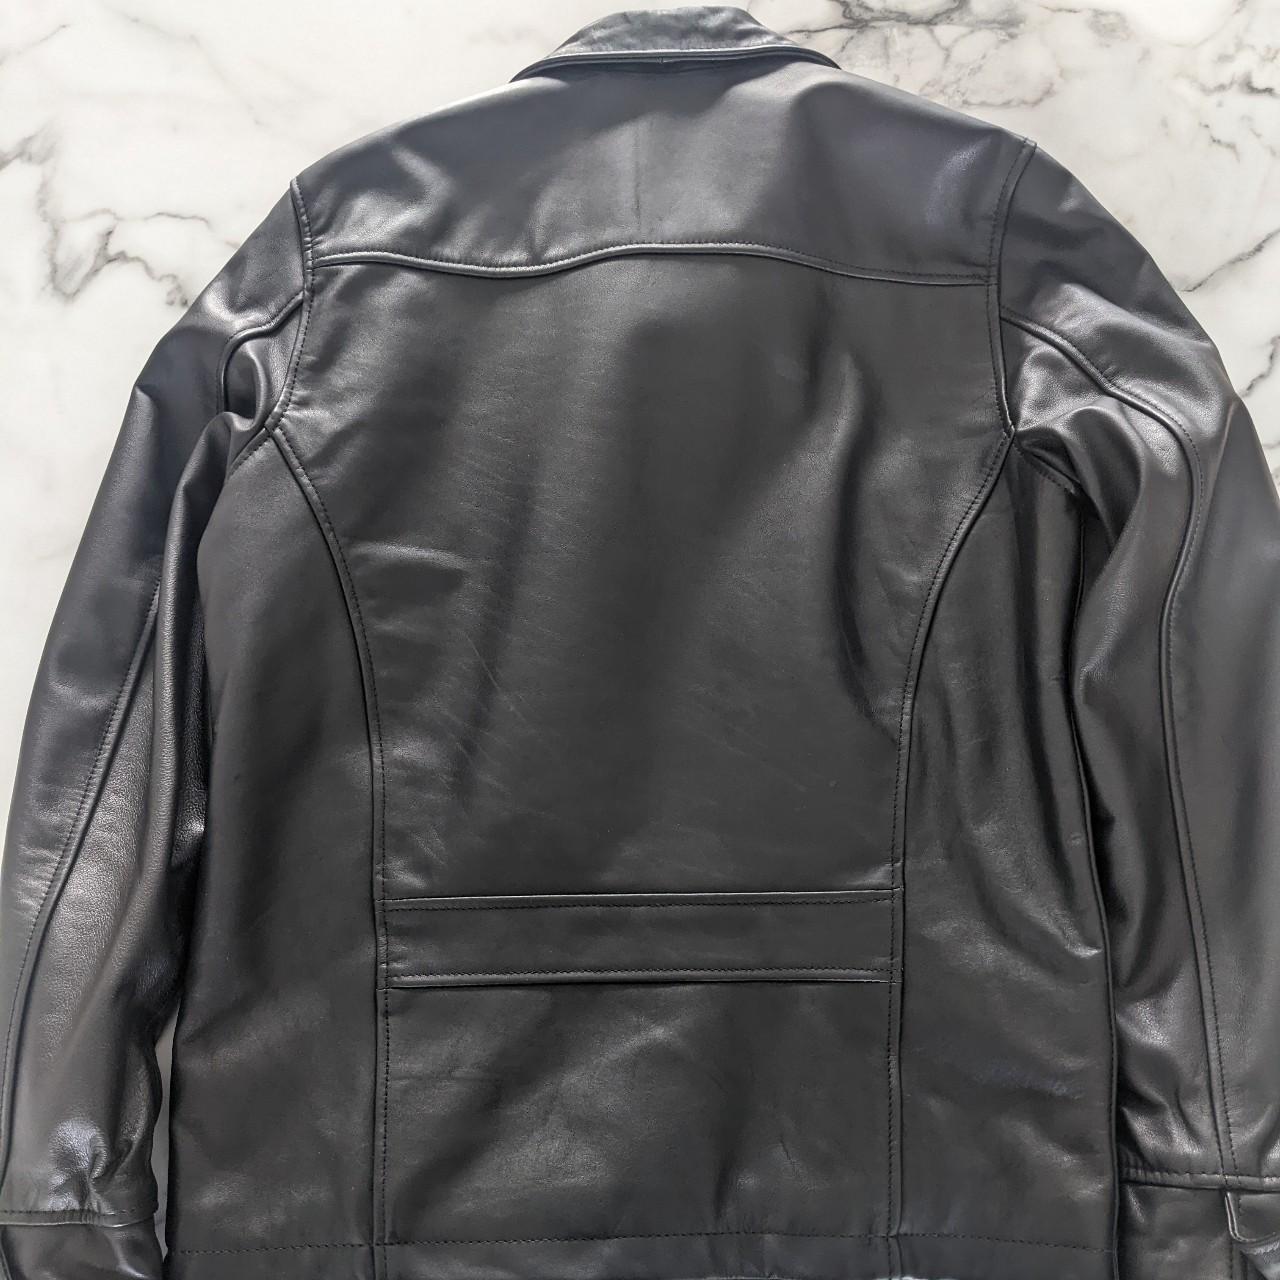 Schott leather jacket in black Size Small Runs a... - Depop